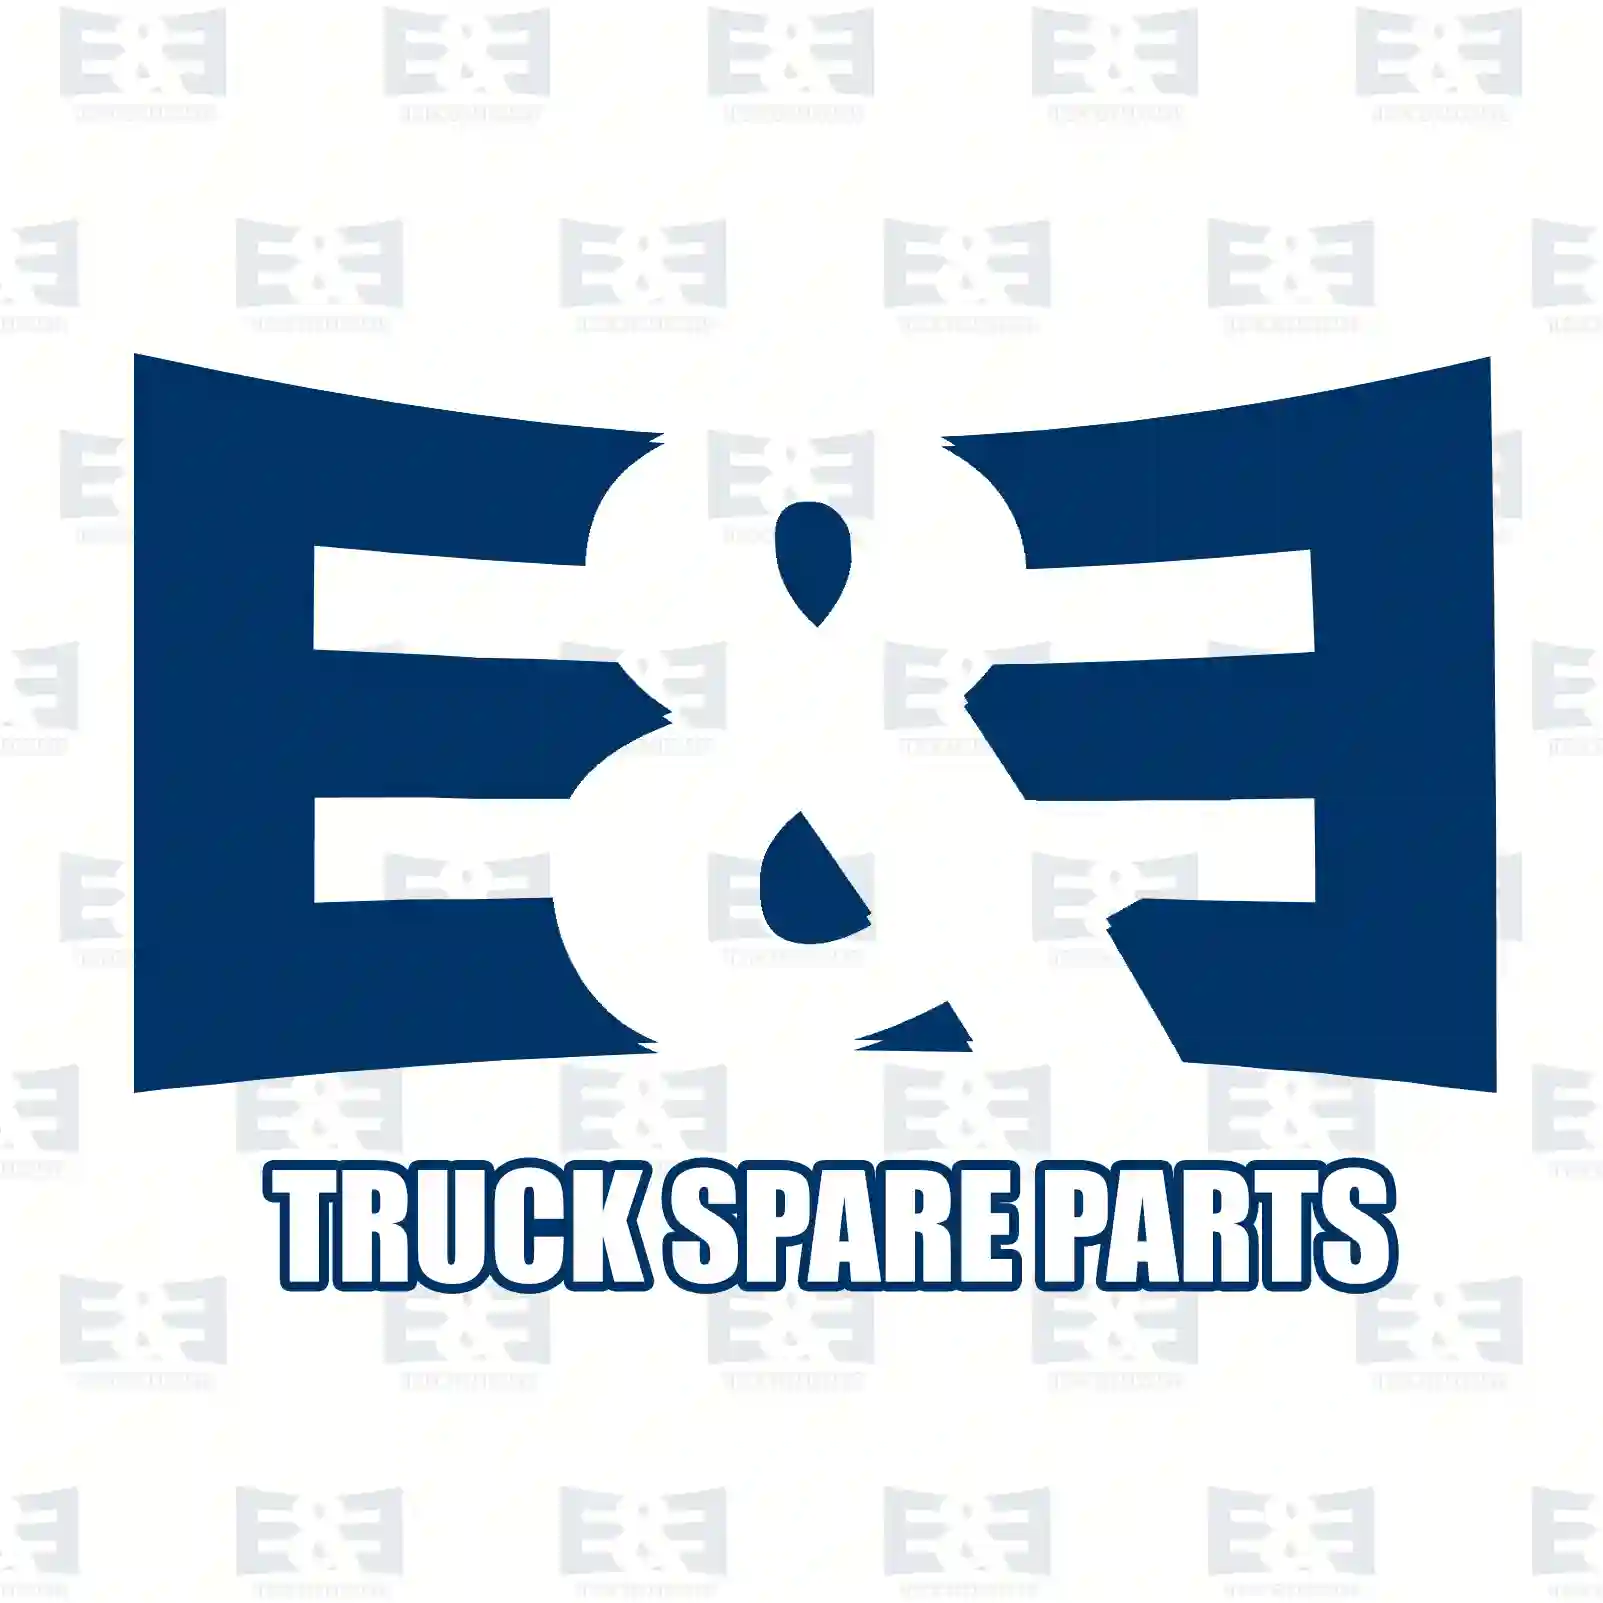 King pin kit, double kit, 2E2270567, 81442056030S1, 81442056037S1, ||  2E2270567 E&E Truck Spare Parts | Truck Spare Parts, Auotomotive Spare Parts King pin kit, double kit, 2E2270567, 81442056030S1, 81442056037S1, ||  2E2270567 E&E Truck Spare Parts | Truck Spare Parts, Auotomotive Spare Parts